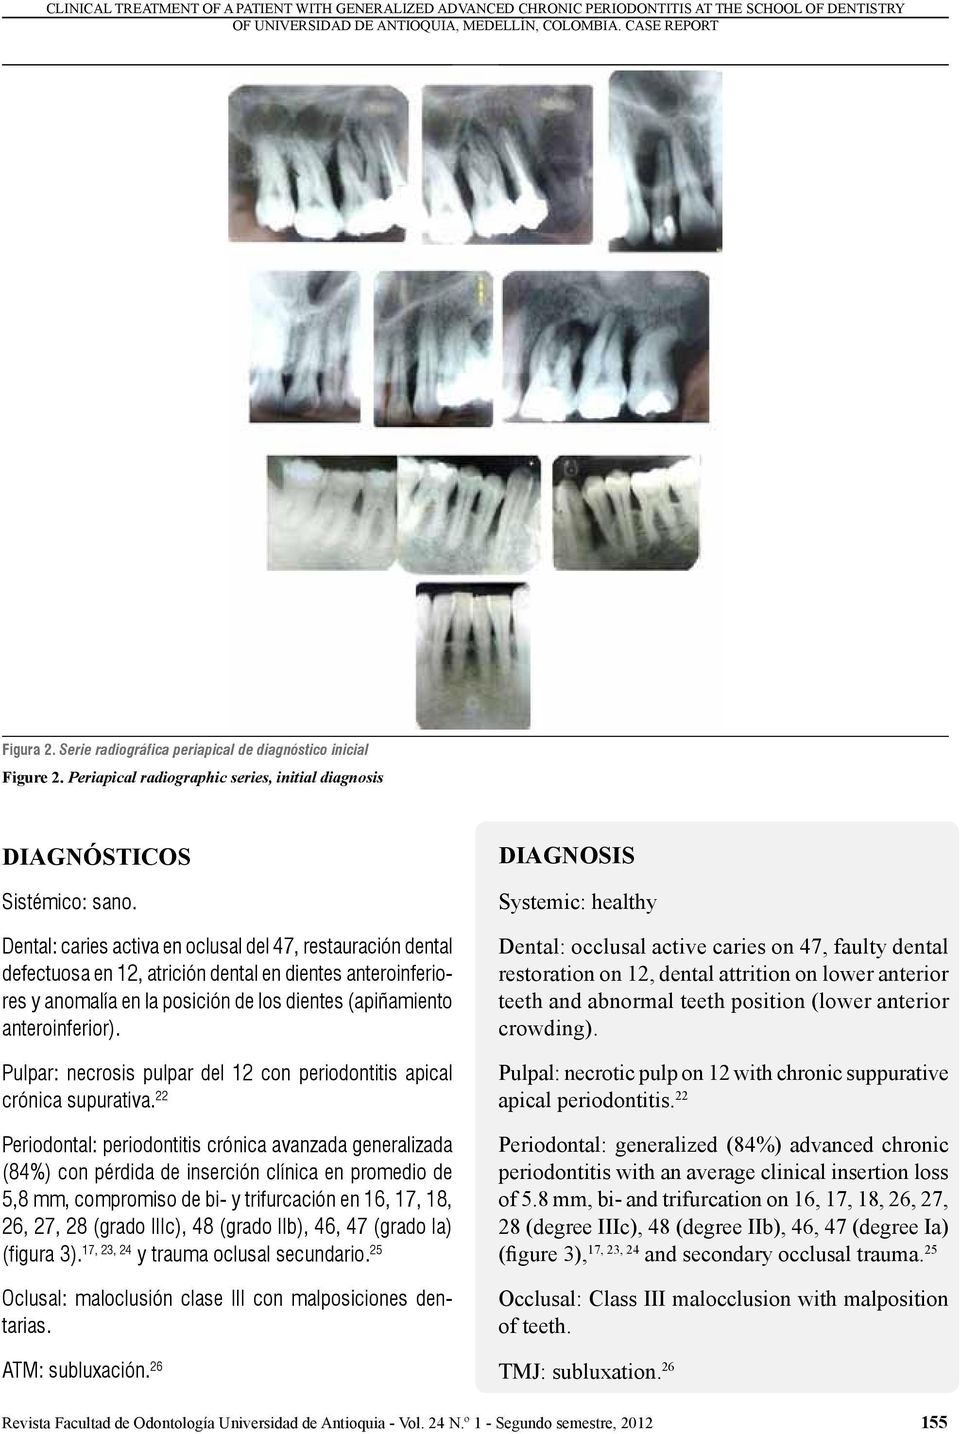 Dental: caries activa en oclusal del 47, restauración dental defectuosa en 12, atrición dental en dientes anteroinferiores y anomalía en la posición de los dientes (apiñamiento anteroinferior).